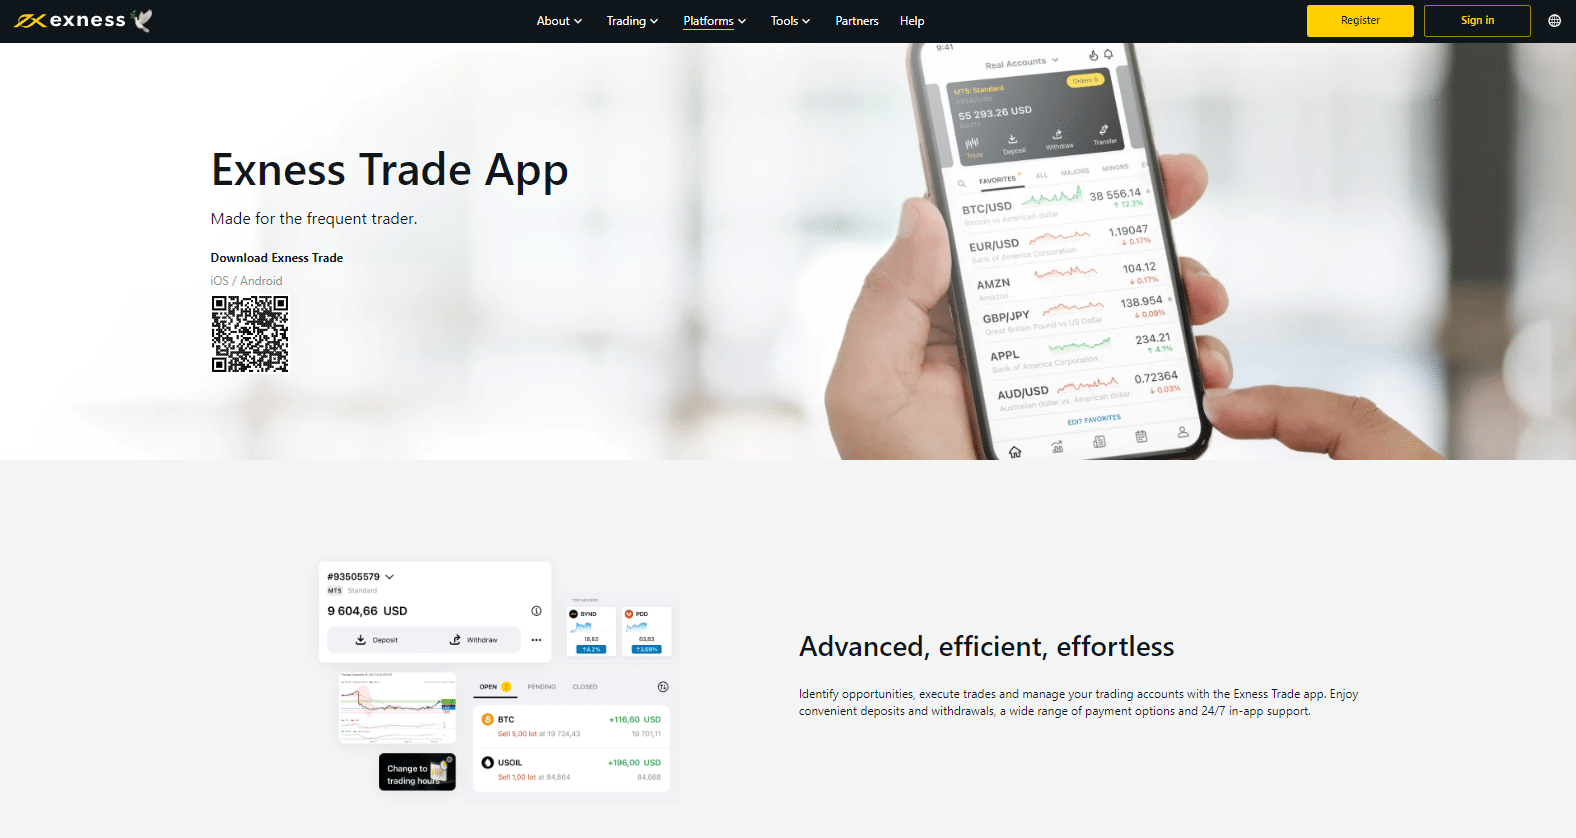 Exness Trader App